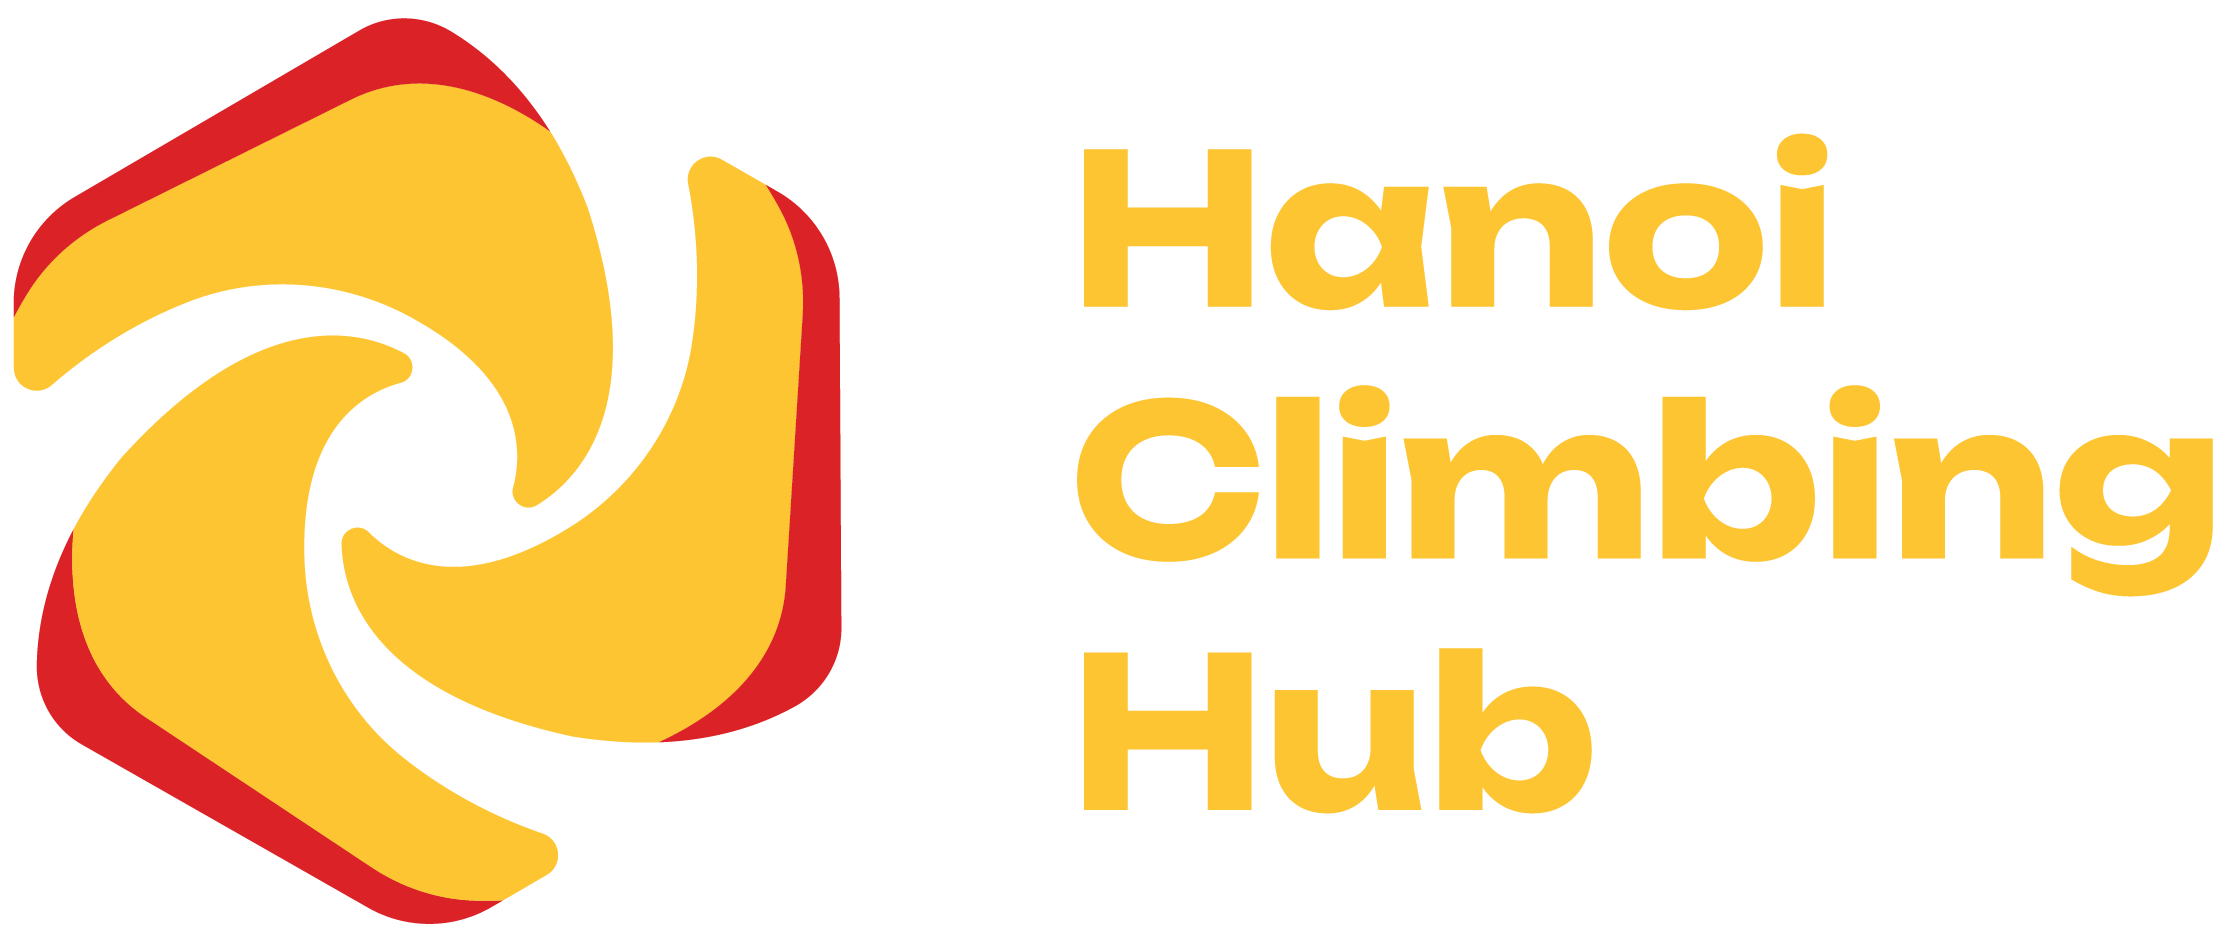 Yellow and red Hanoi Climbing Hub header logo